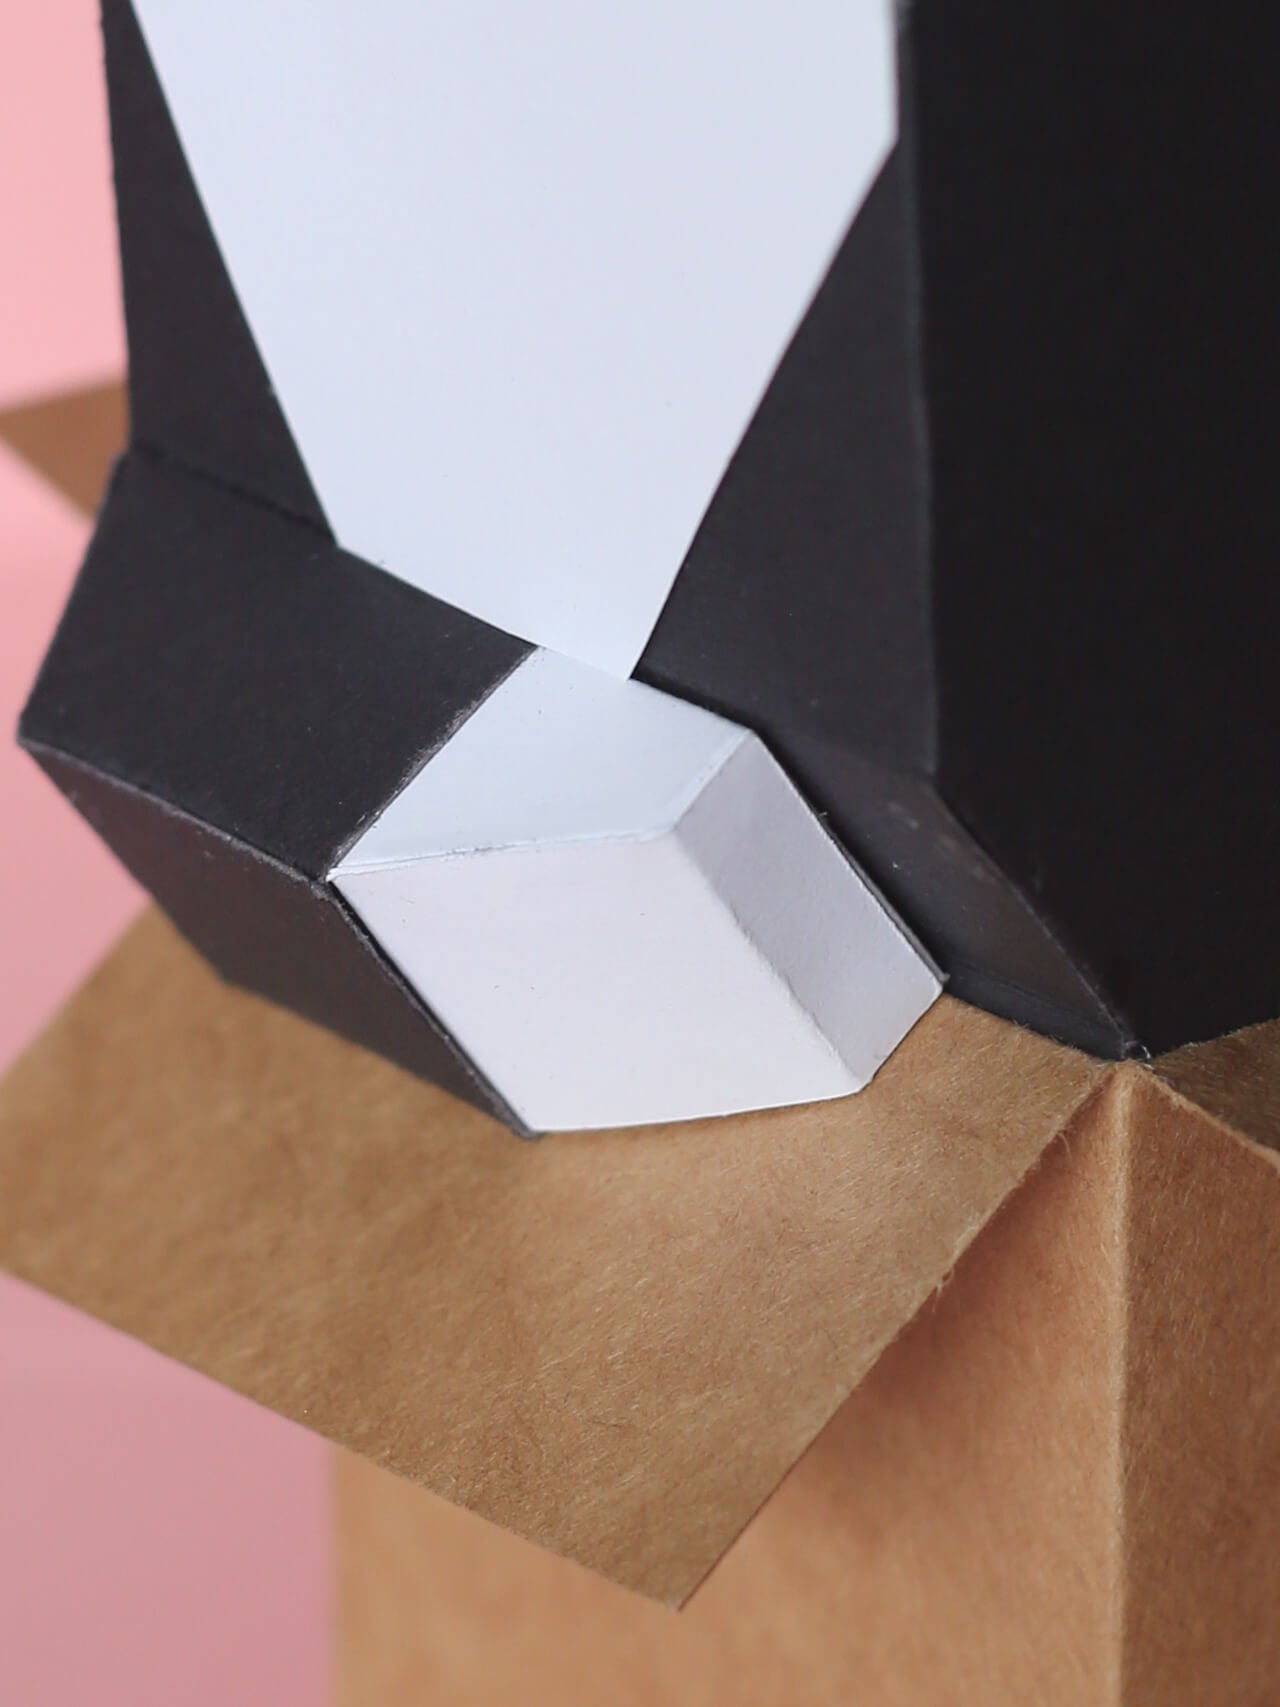 Pyramid Head - Papercraft Gratis - Papercraft Gratis